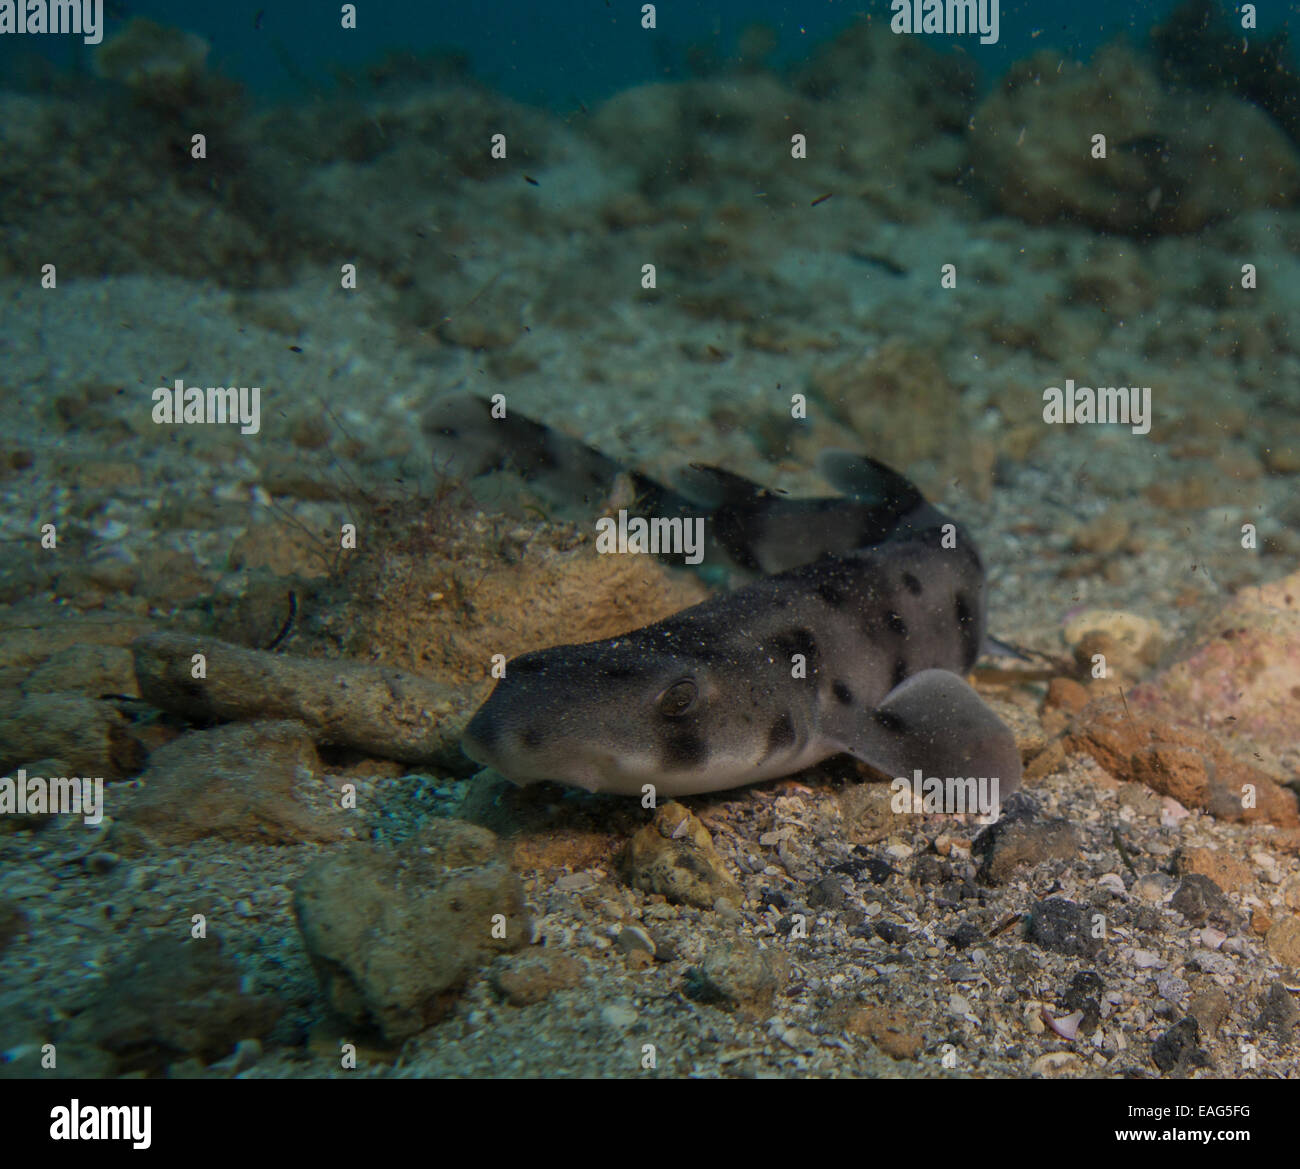 Nursehound shark, Scyliorhinus stellaris, from the Mediterranean Sea. This picture was taken in Malta. Stock Photo